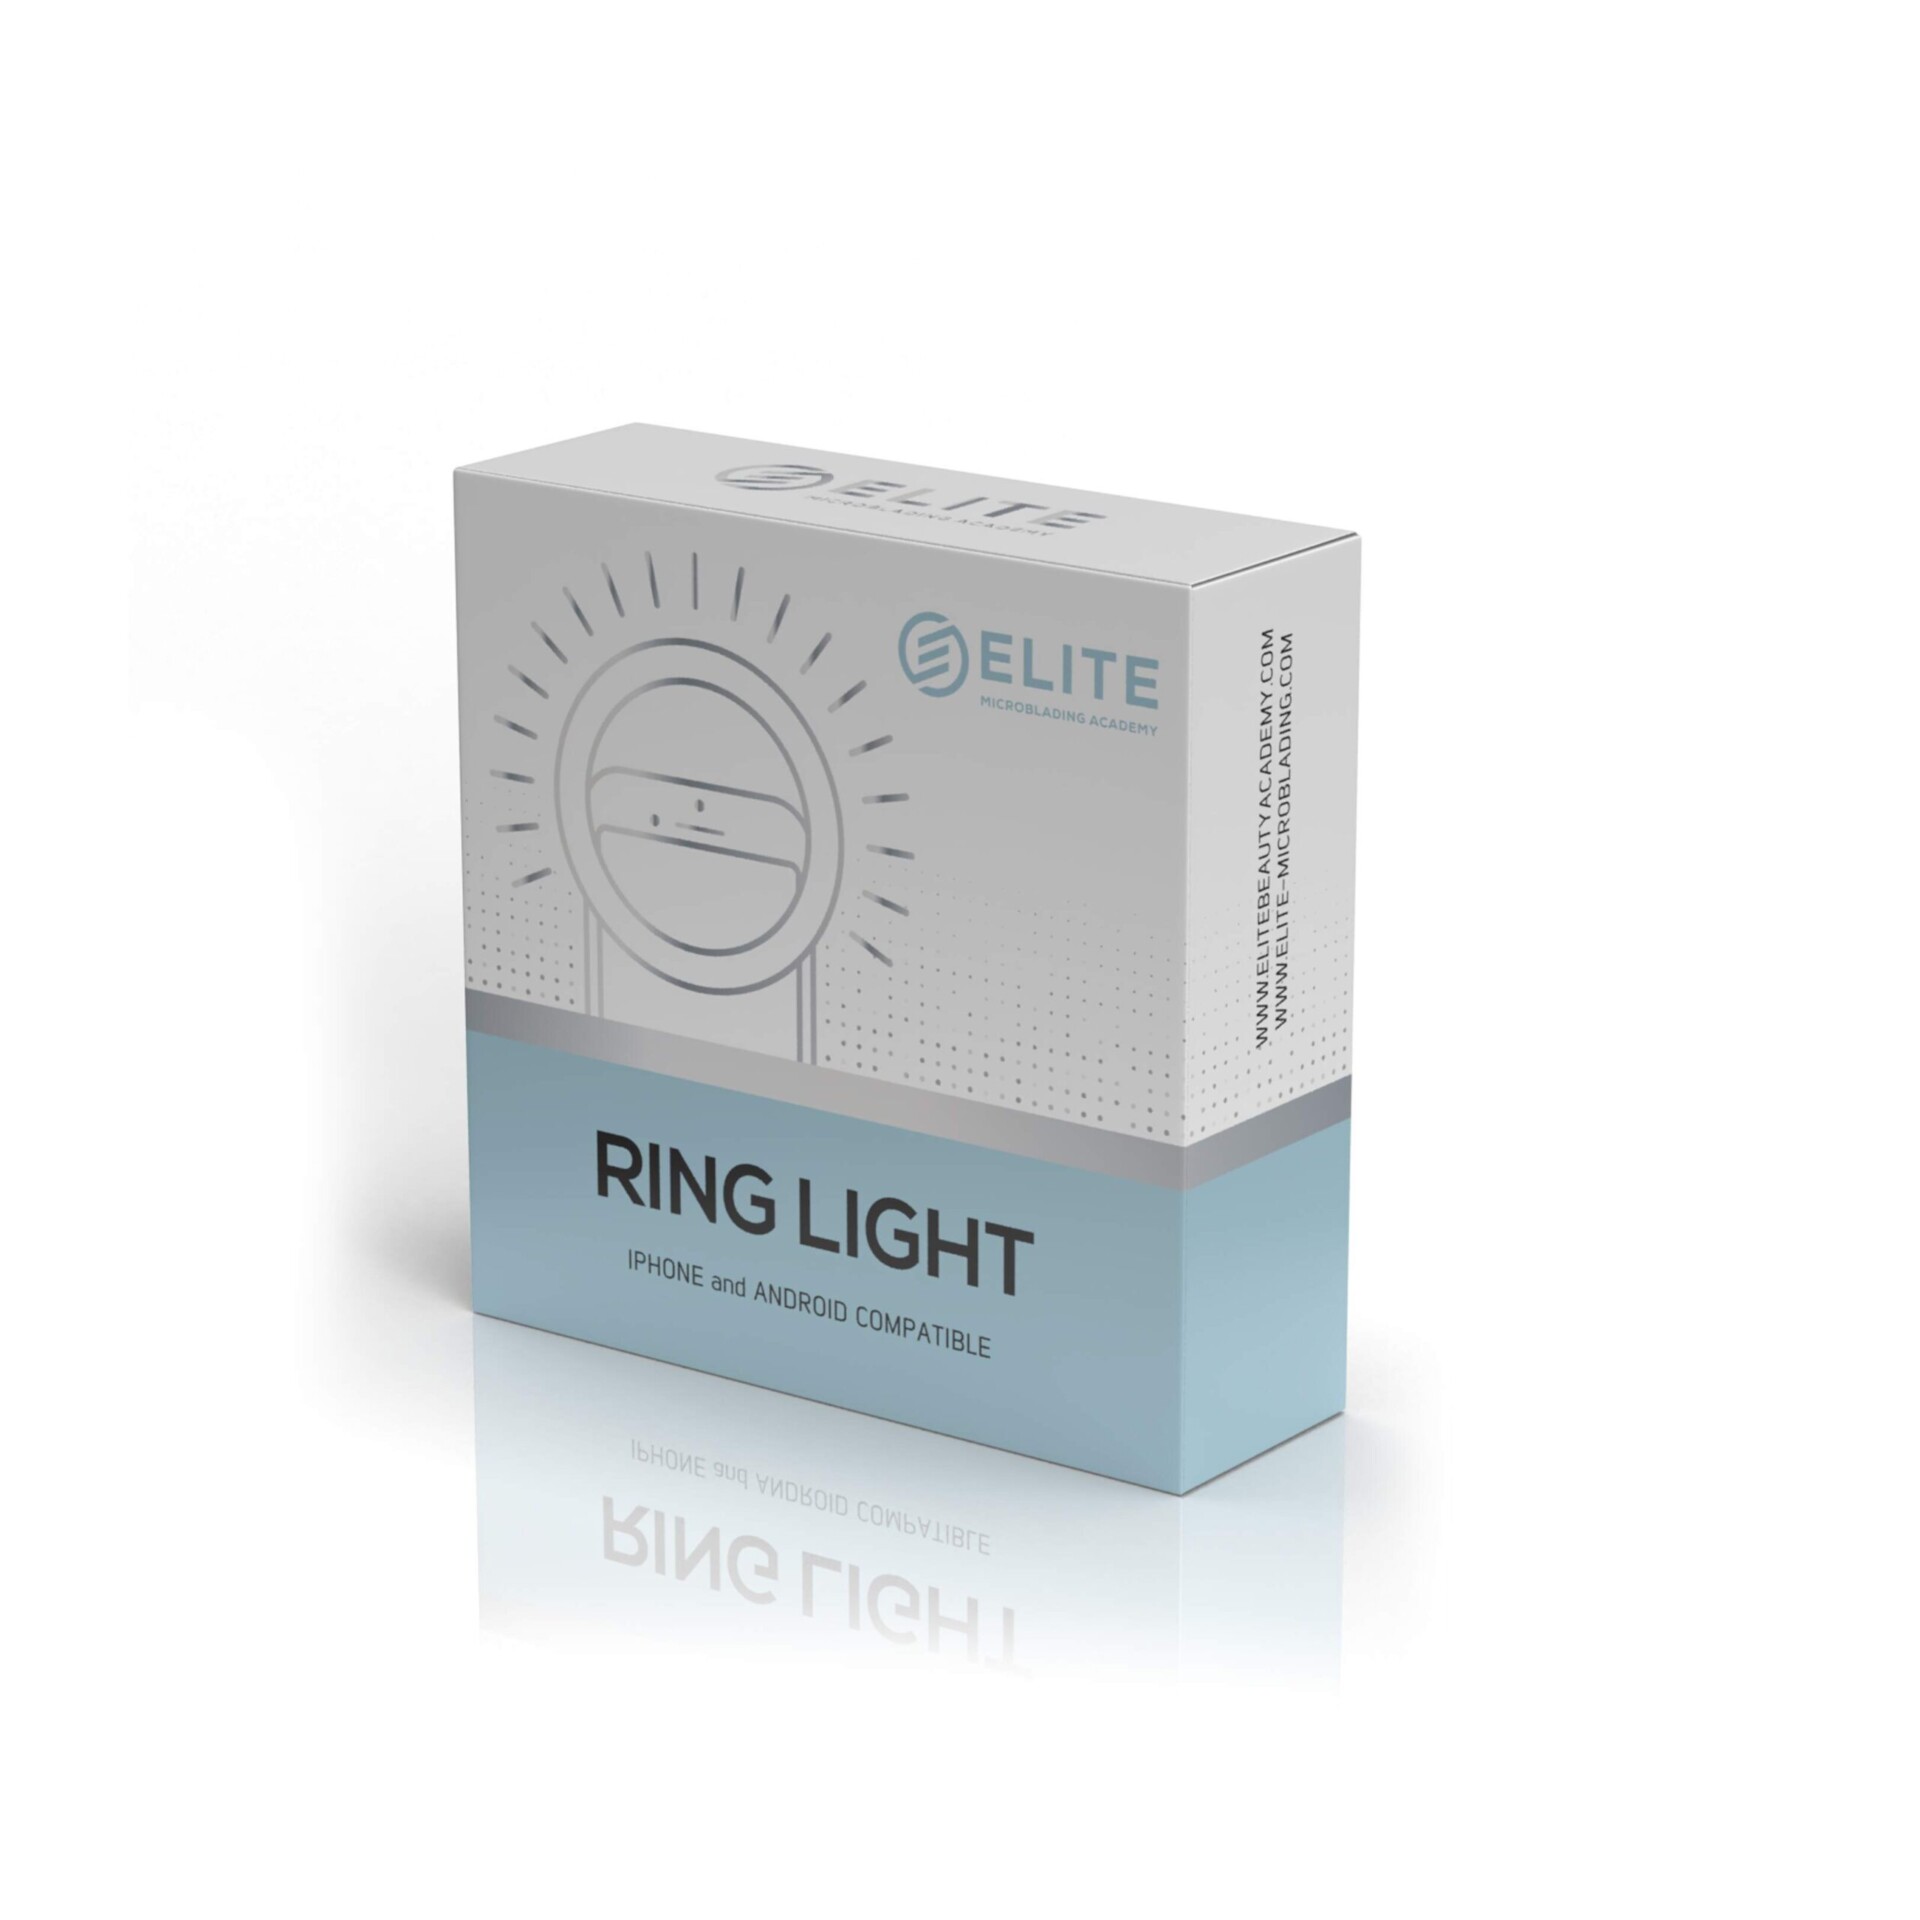 ring light for mobile phone